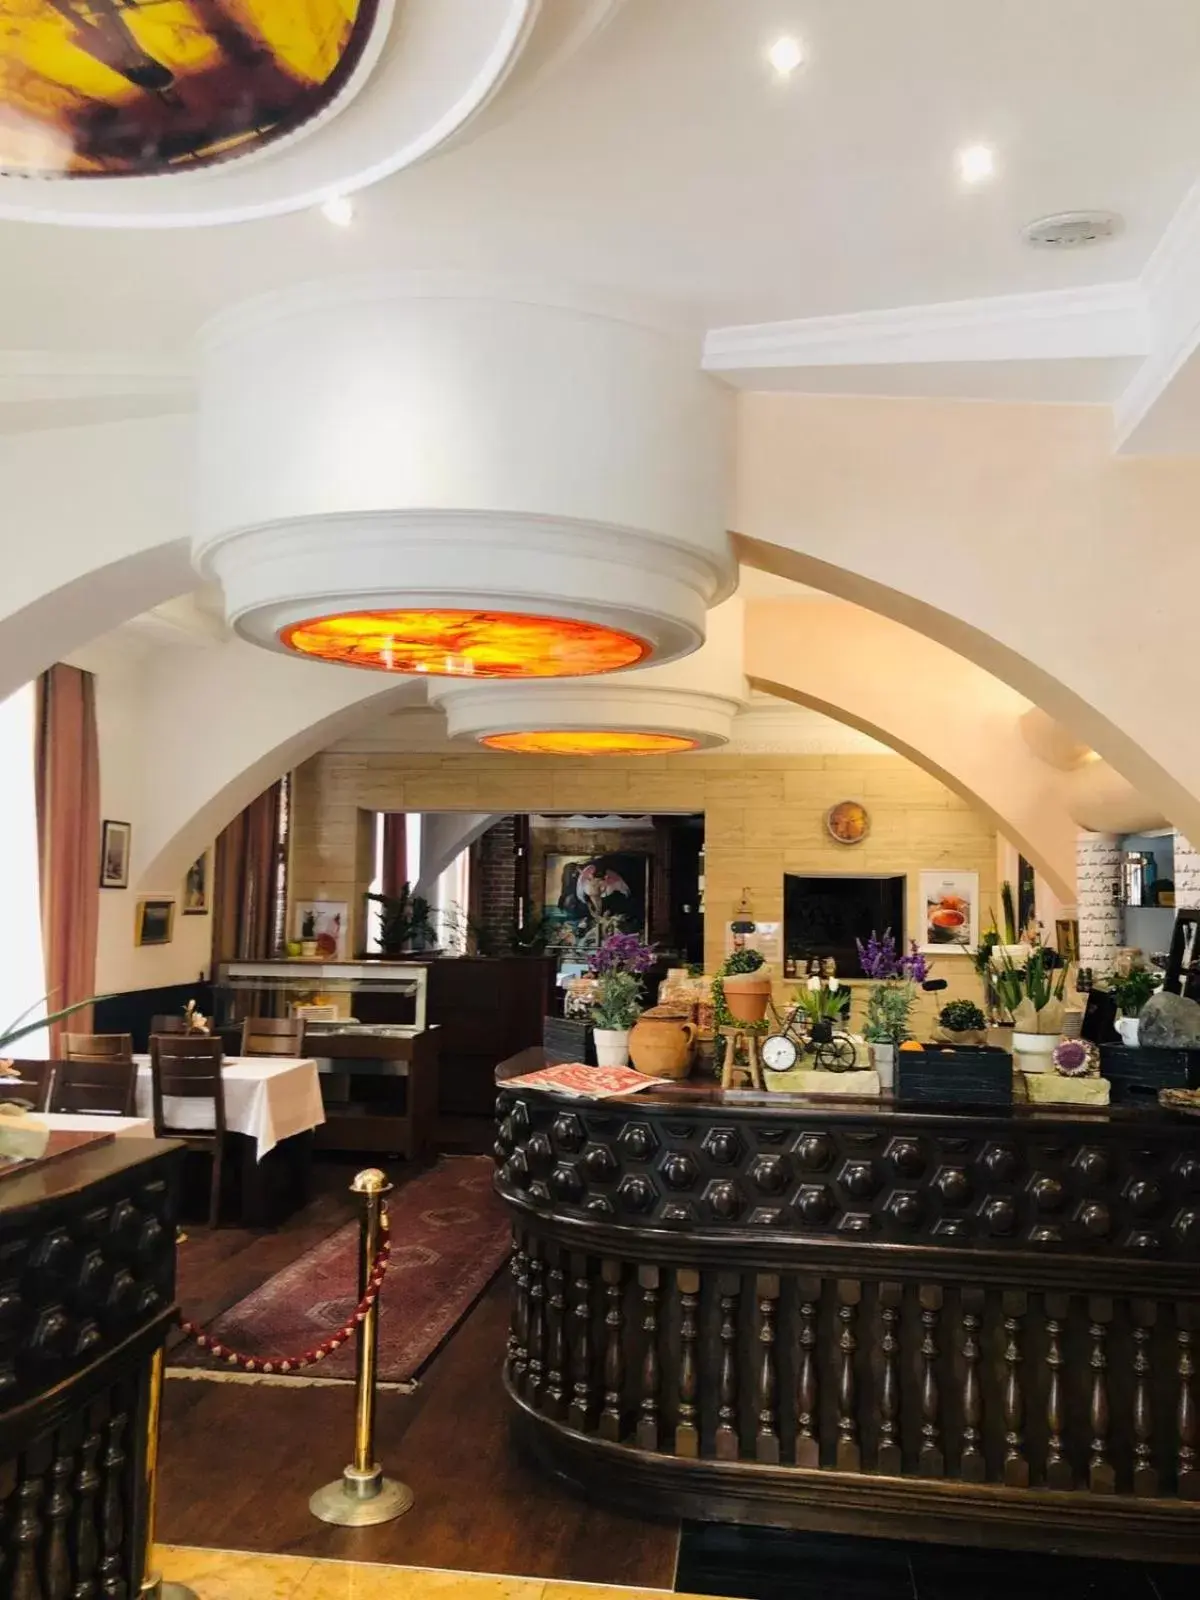 Buffet breakfast, Lounge/Bar in Best Western Hotel Strasser